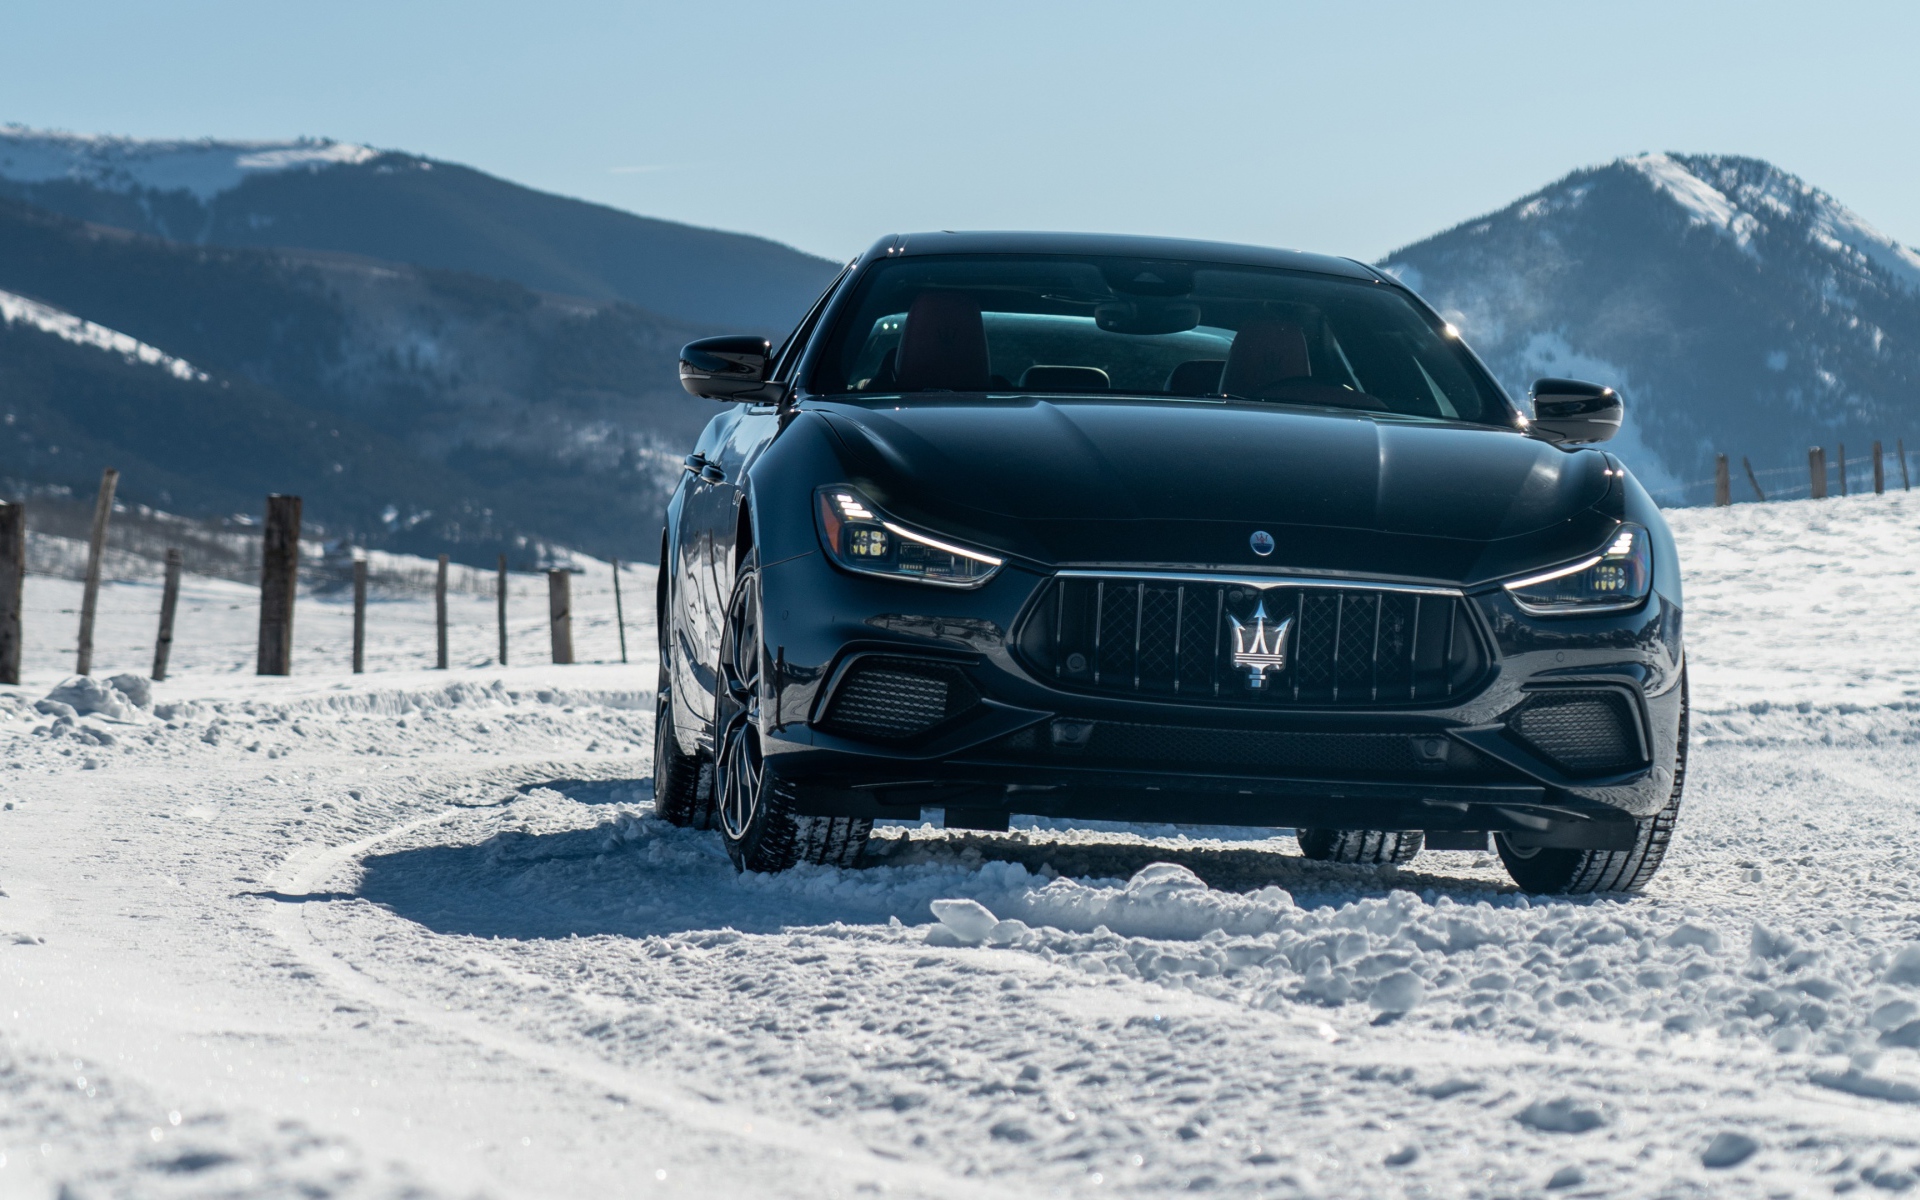 Черный автомобиль Maserati Ghibli S Q4, 2020 года едет по заснеженной дороге